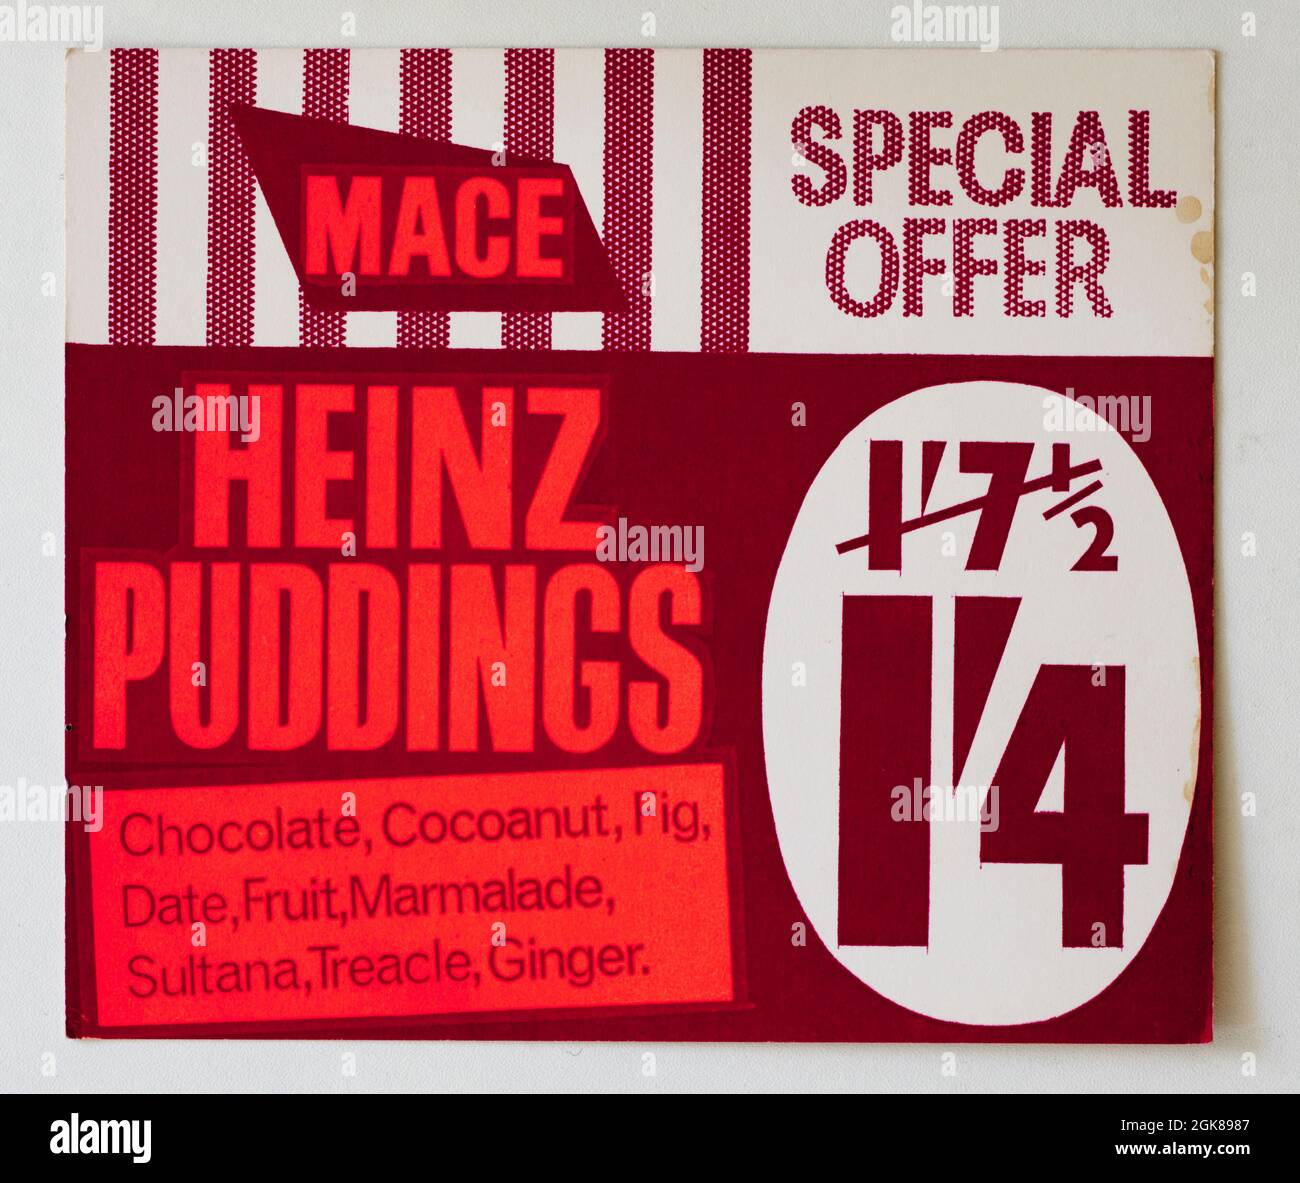 Carte de démonstration de prix de boutique vintage des années 1960 - Heinz puddings Banque D'Images